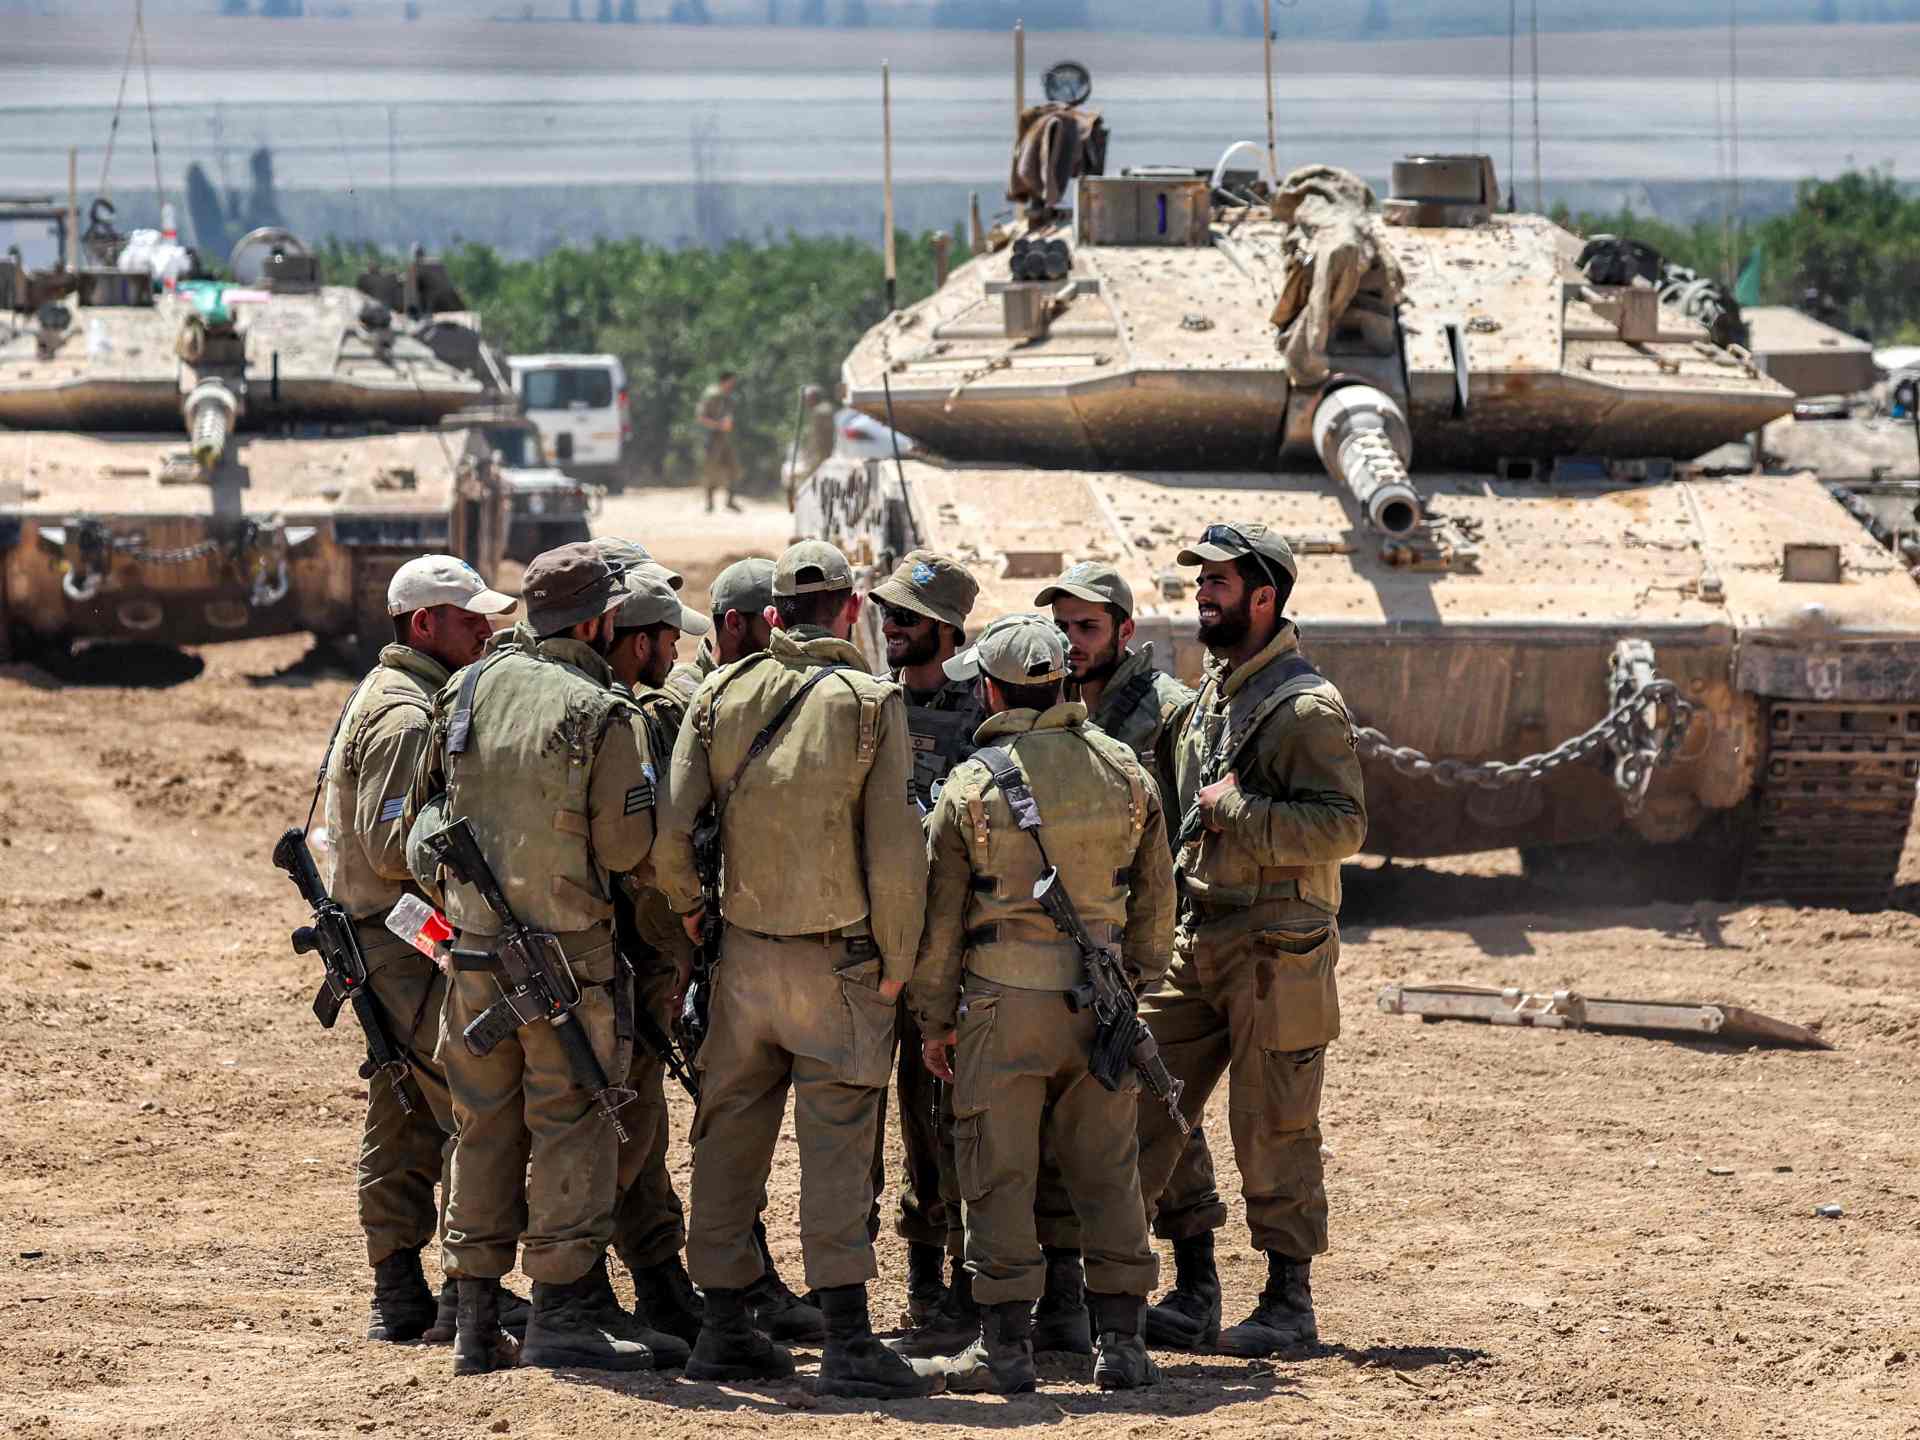 إيكونوميست: الجيش الإسرائيلي عالق بحلقة الموت في غزة | أخبار – البوكس نيوز